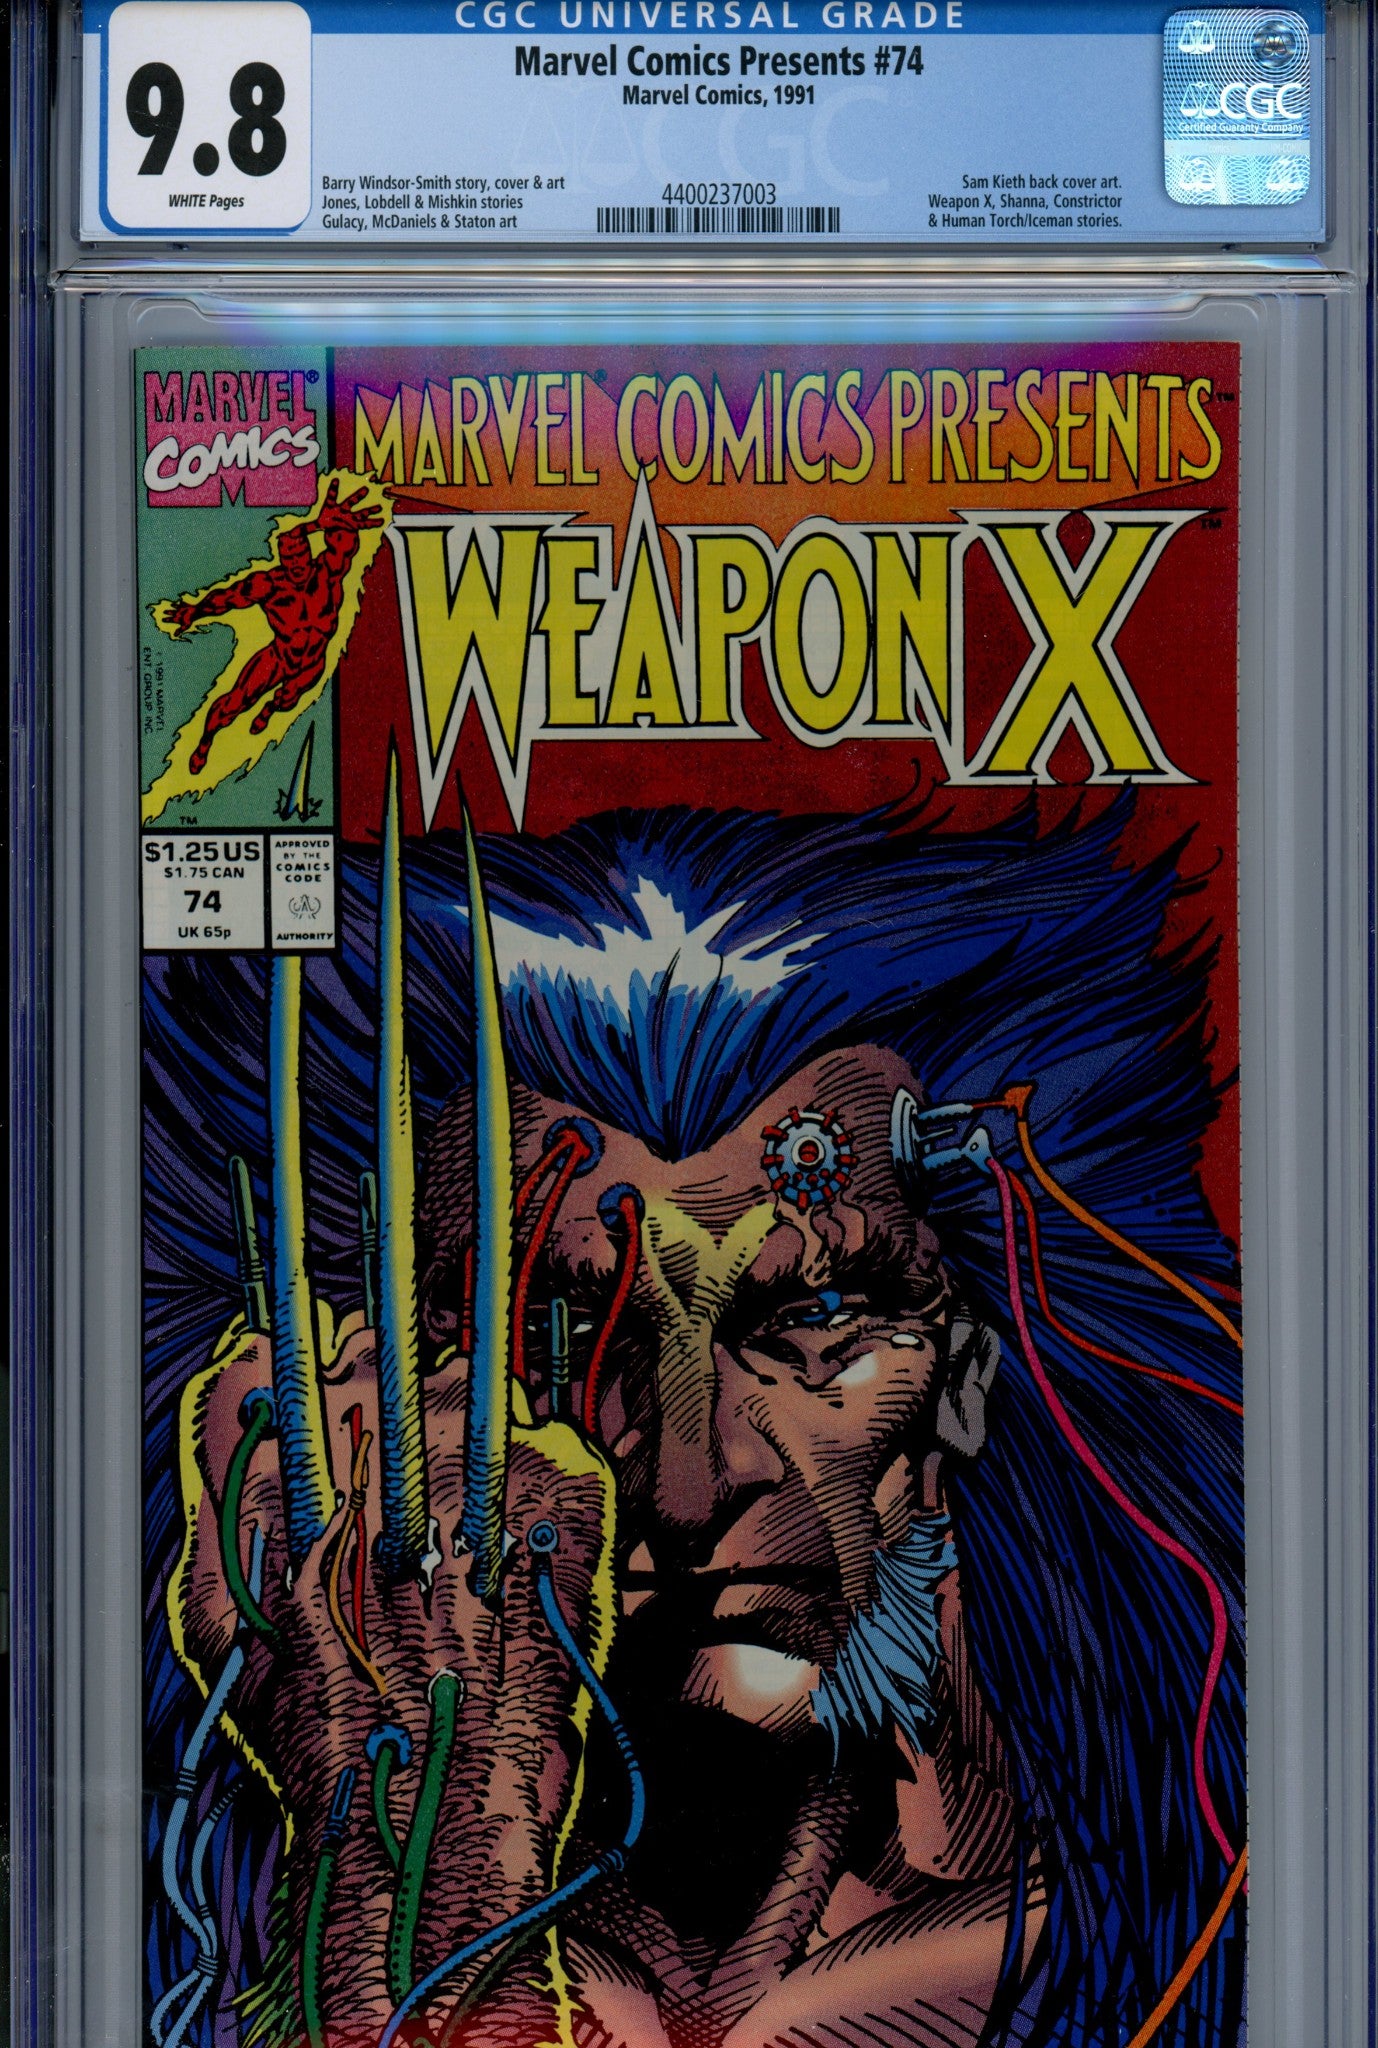 Marvel Comics Presents Vol 1 74 CGC 9.8 (NM/M) (1991) 